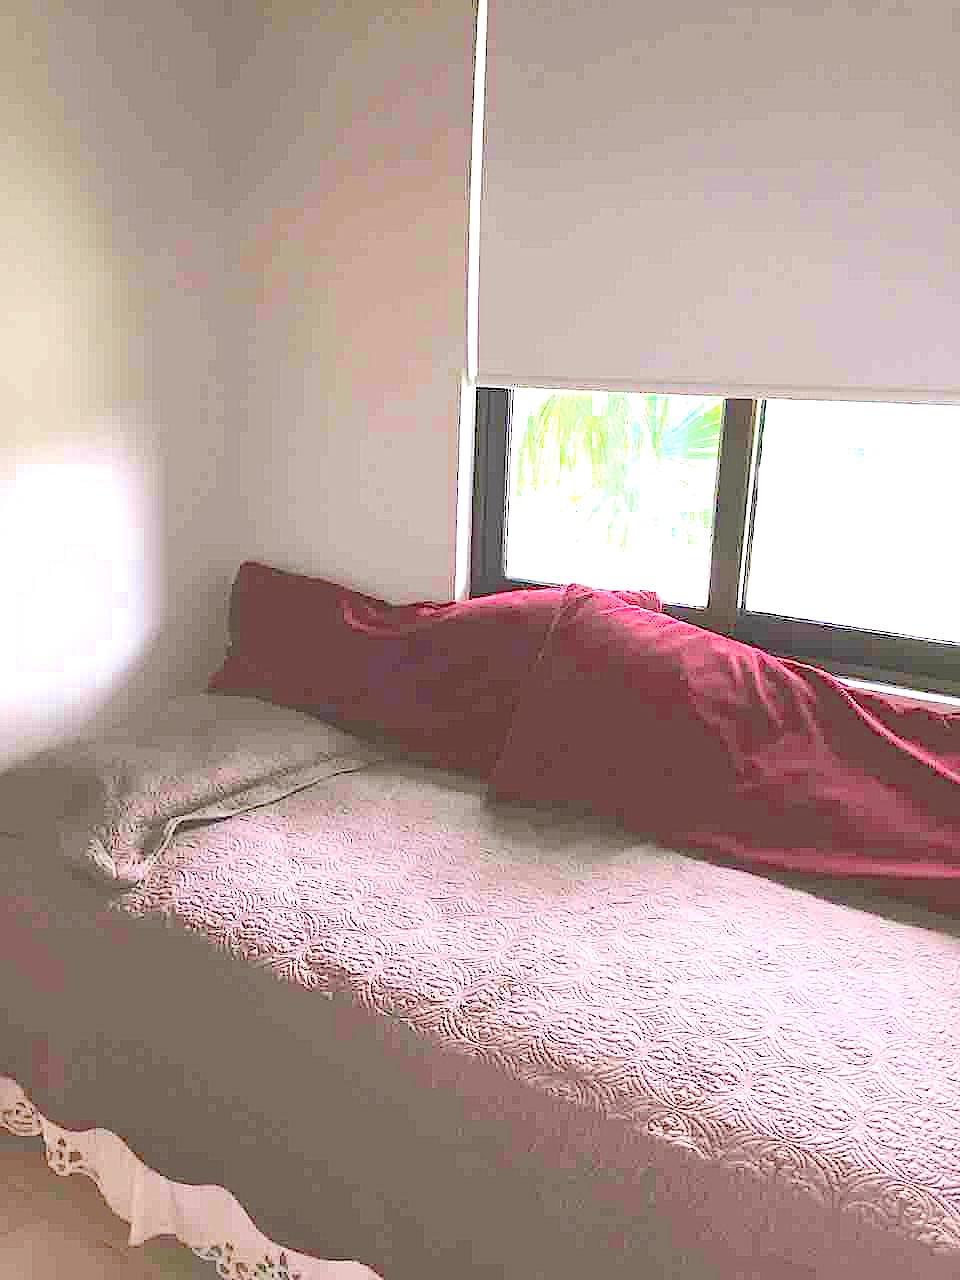 Paseo de las Casas PANAMA,3 Bedrooms Bedrooms,3 BathroomsBathrooms,Apartment,CASA PACIFICA,2,1058